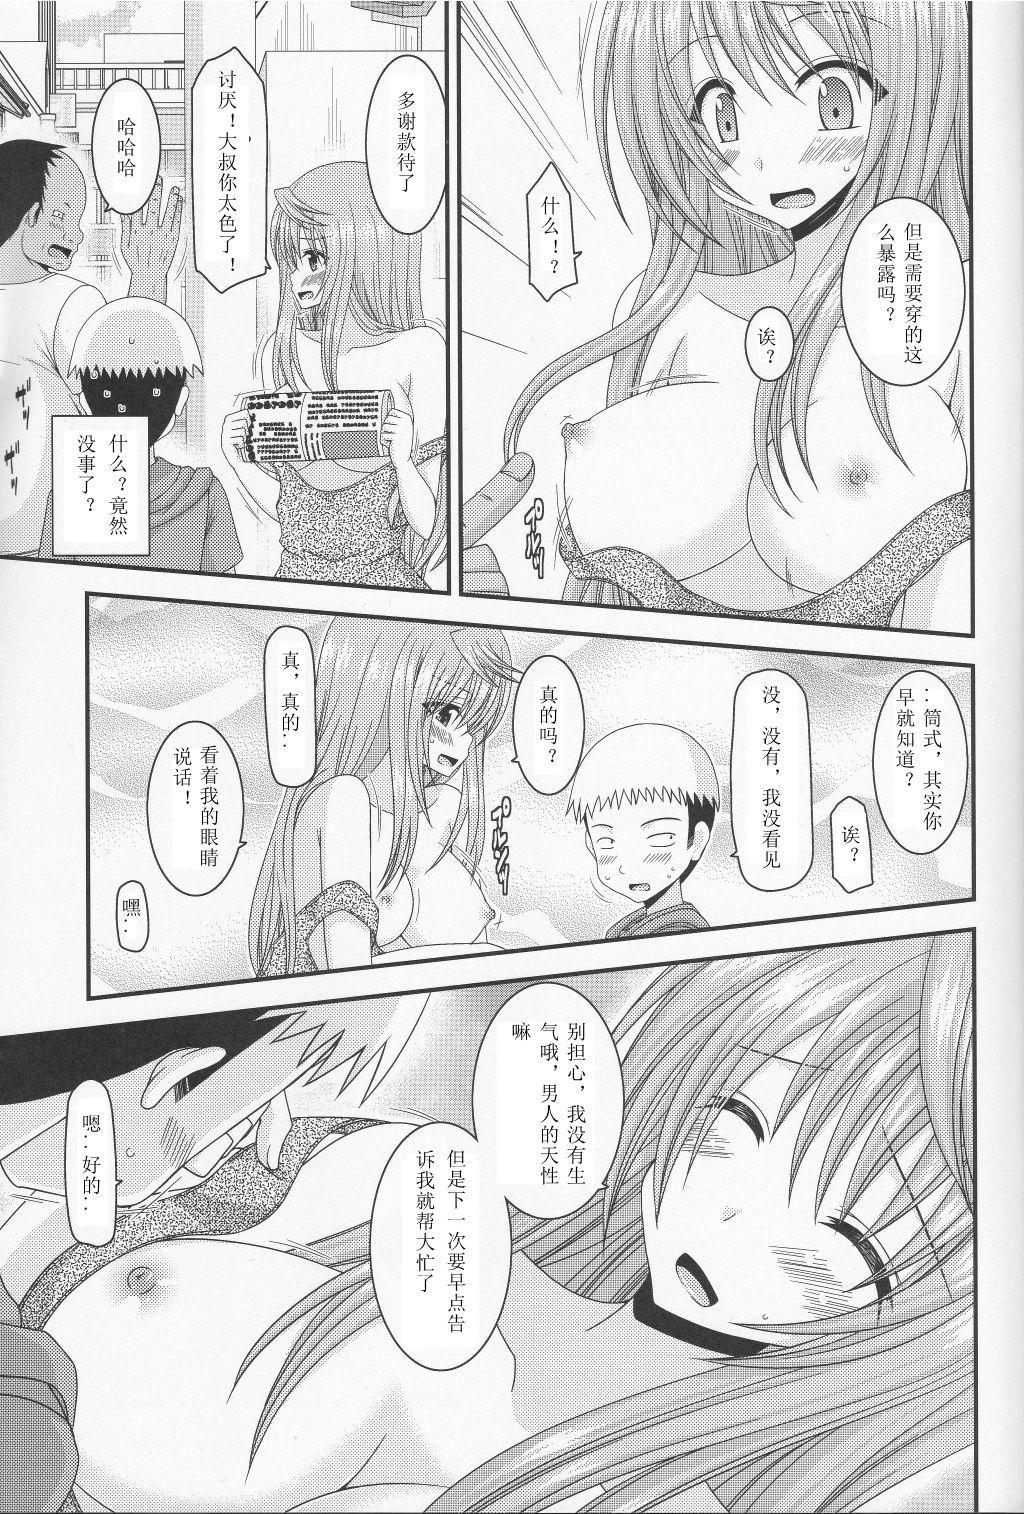 3some Roshutsu Shoujo Nikki 10 Satsume Dick Suckers - Page 9